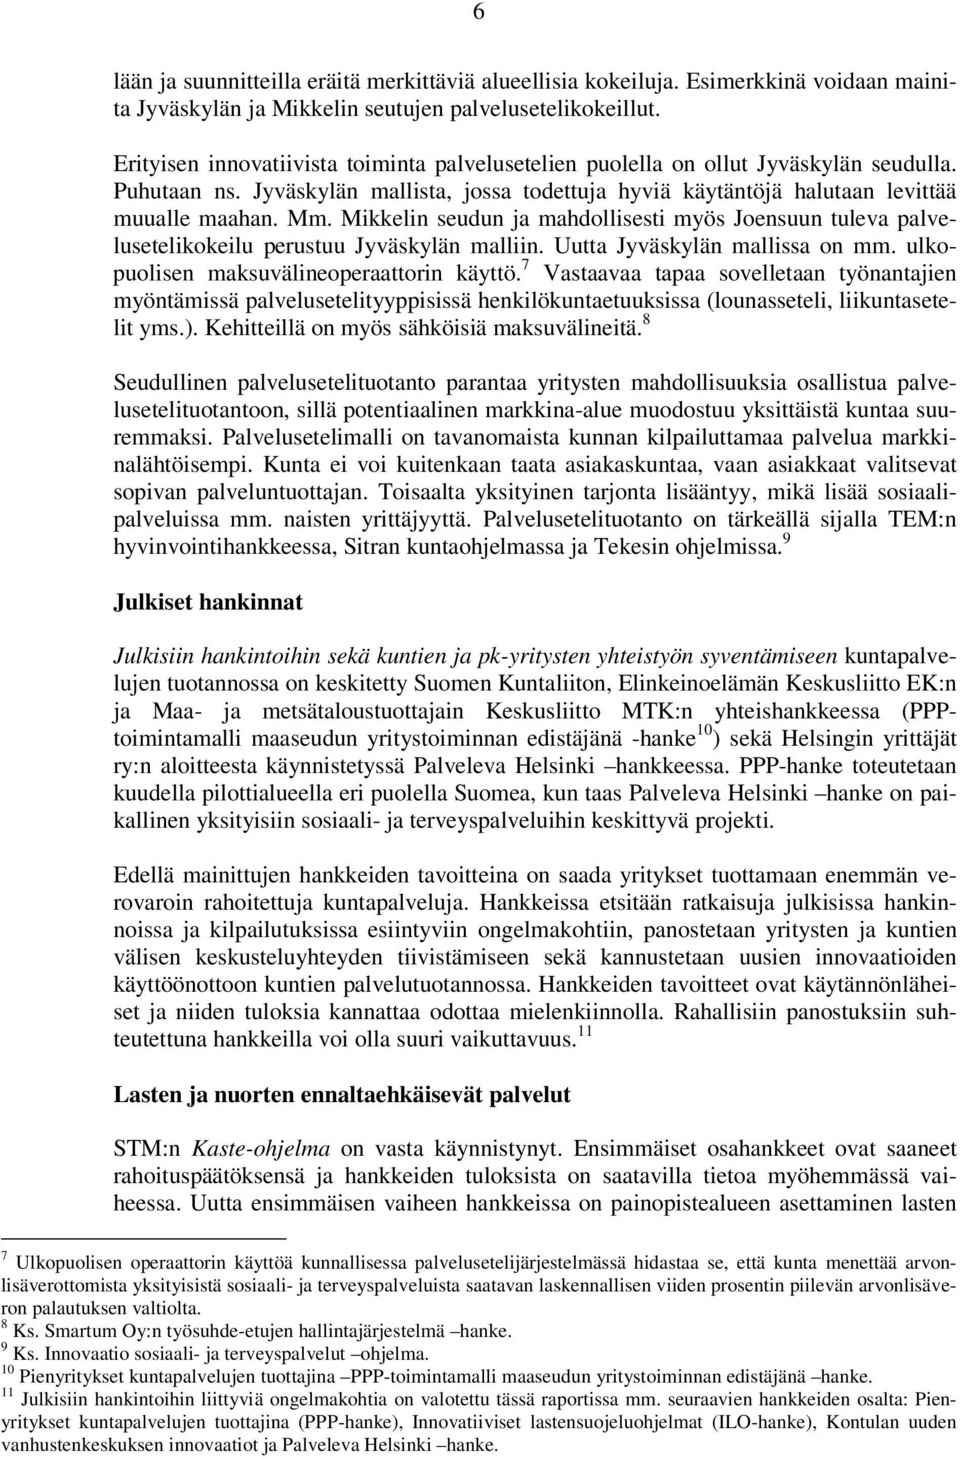 Mikkelin seudun ja mahdollisesti myös Joensuun tuleva palvelusetelikokeilu perustuu Jyväskylän malliin. Uutta Jyväskylän mallissa on mm. ulkopuolisen maksuvälineoperaattorin käyttö.